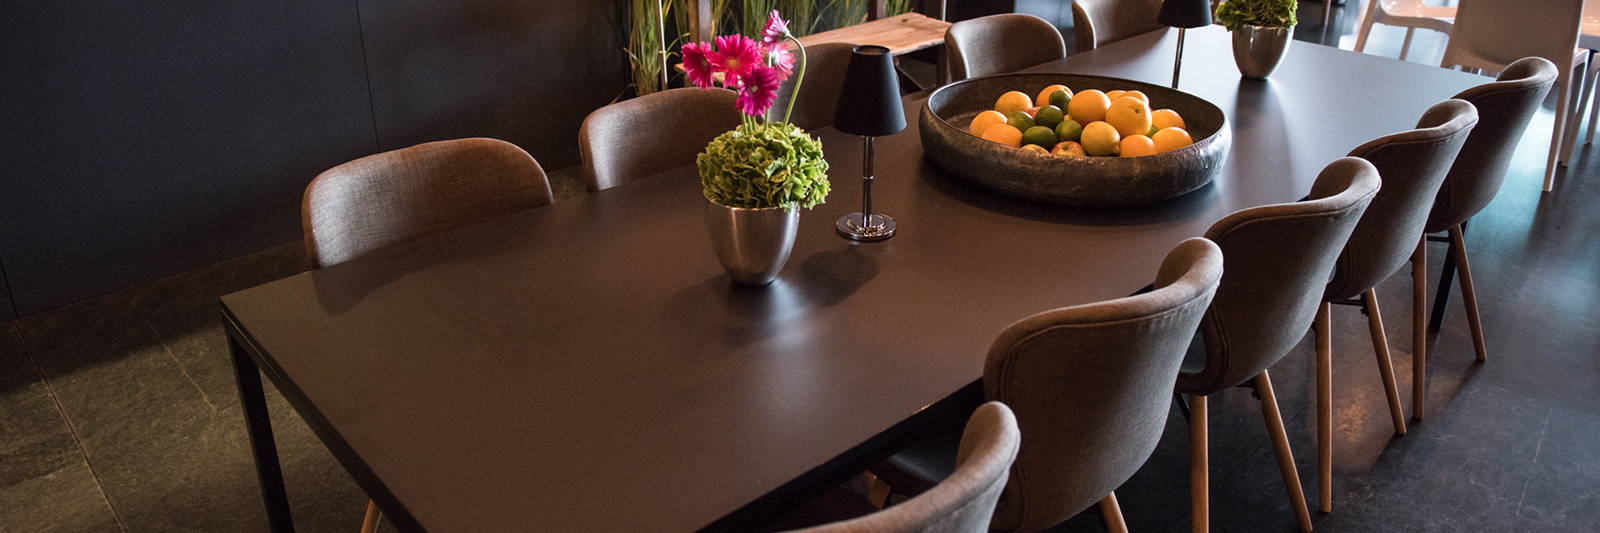 Event Tisch mieten in schwarz mit Poster Stühlen